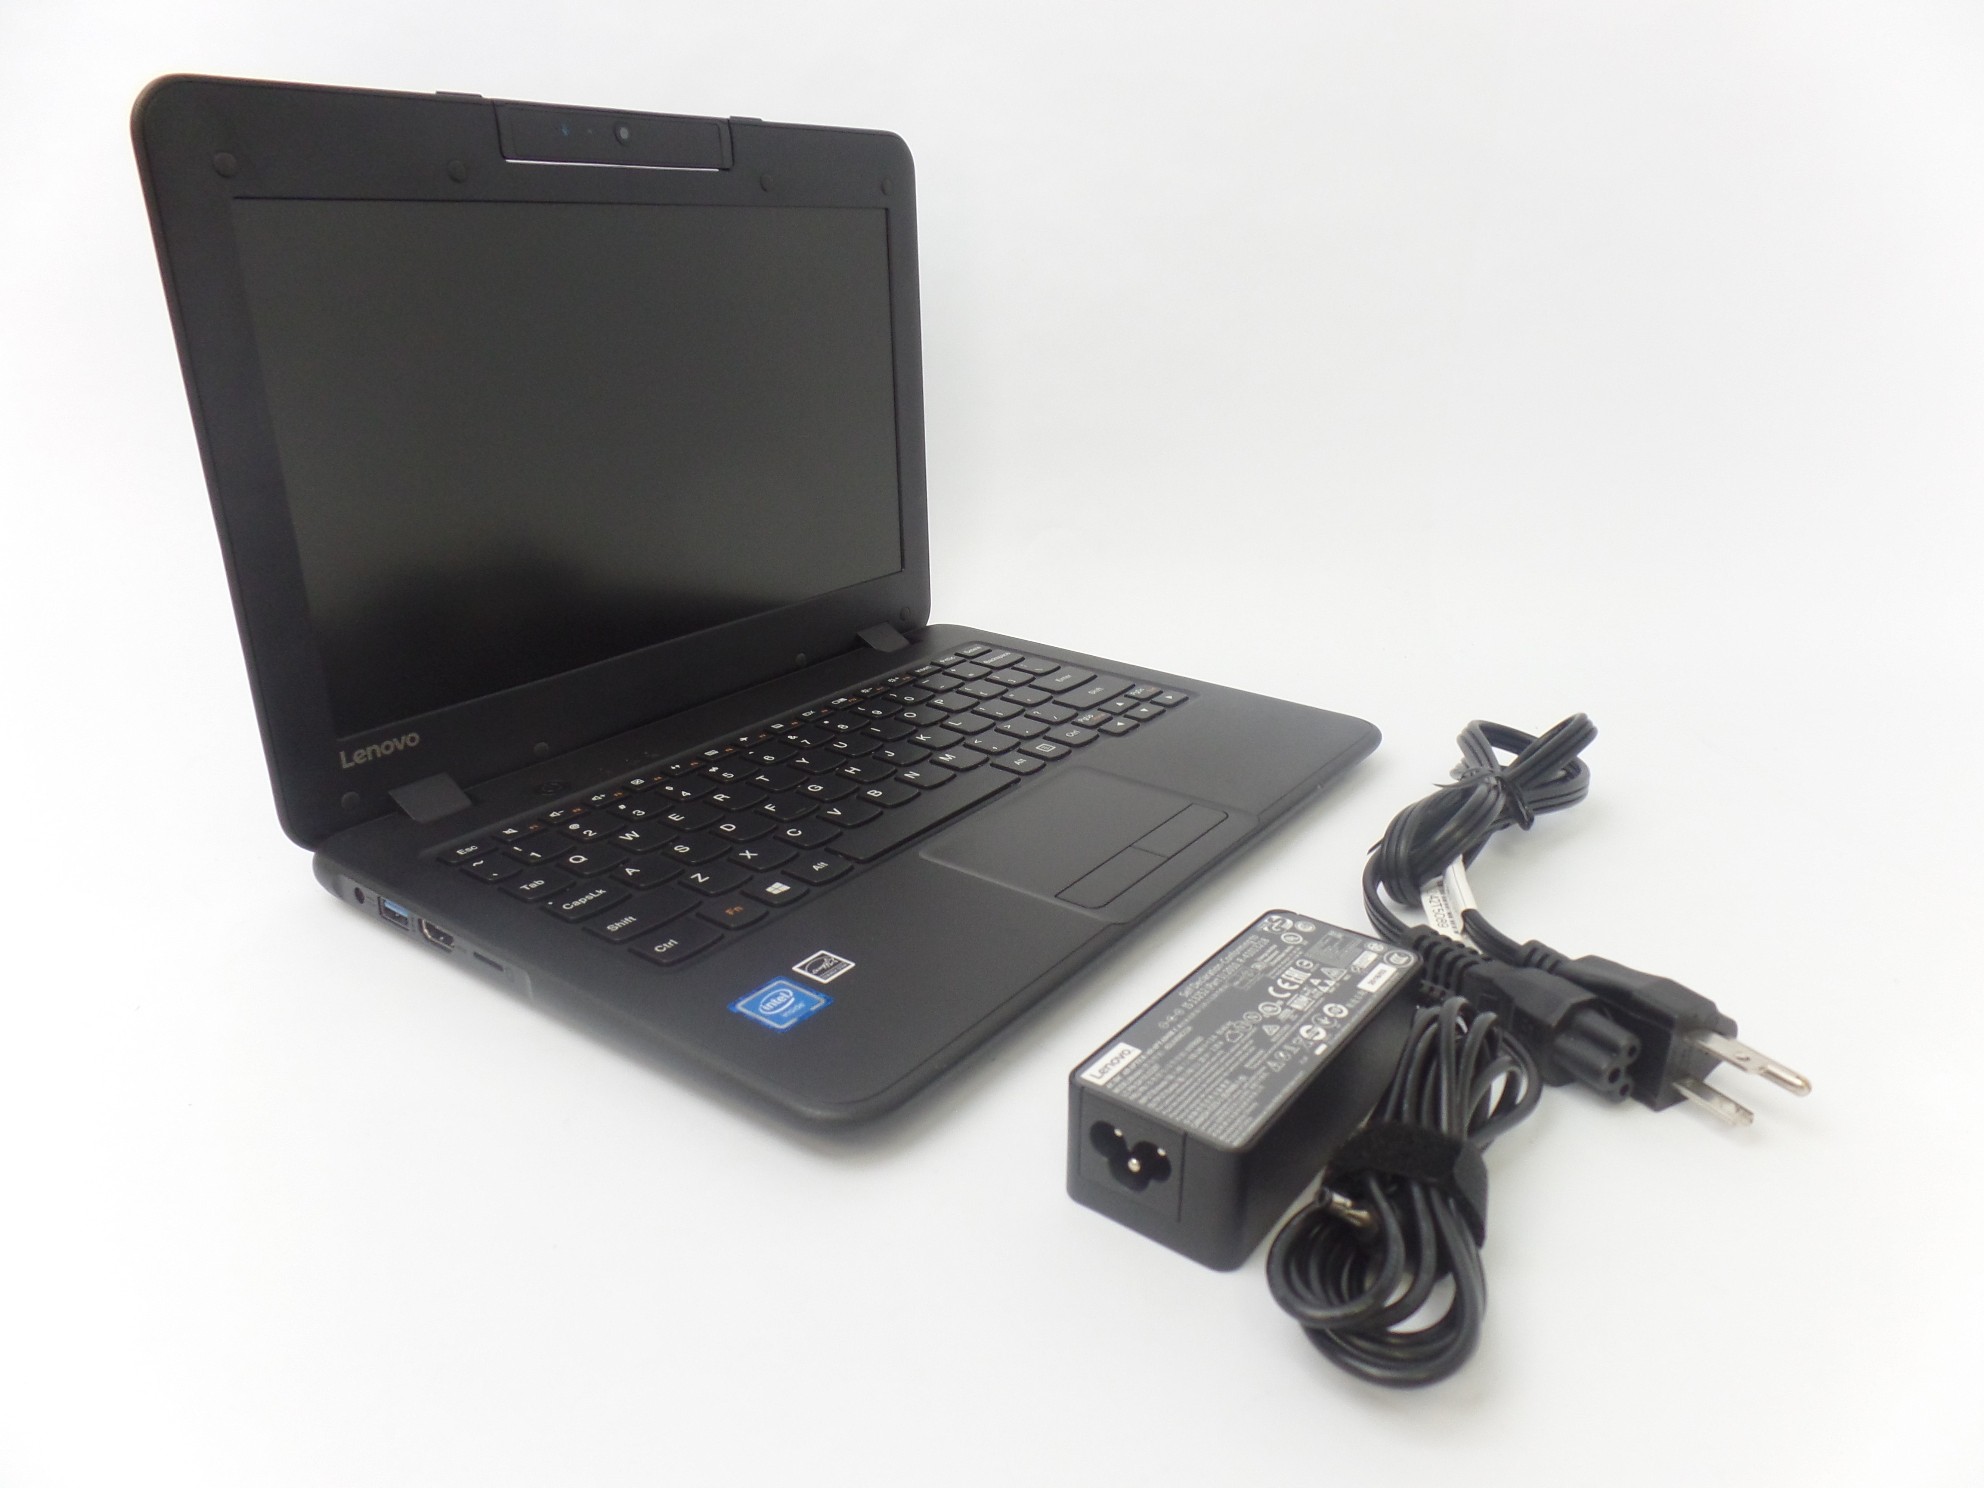 Lenovo N22 Winbook 11.6" HD LED N3050 1.6GHz 4GB 64GB W10H 80S60005US Laptop SD